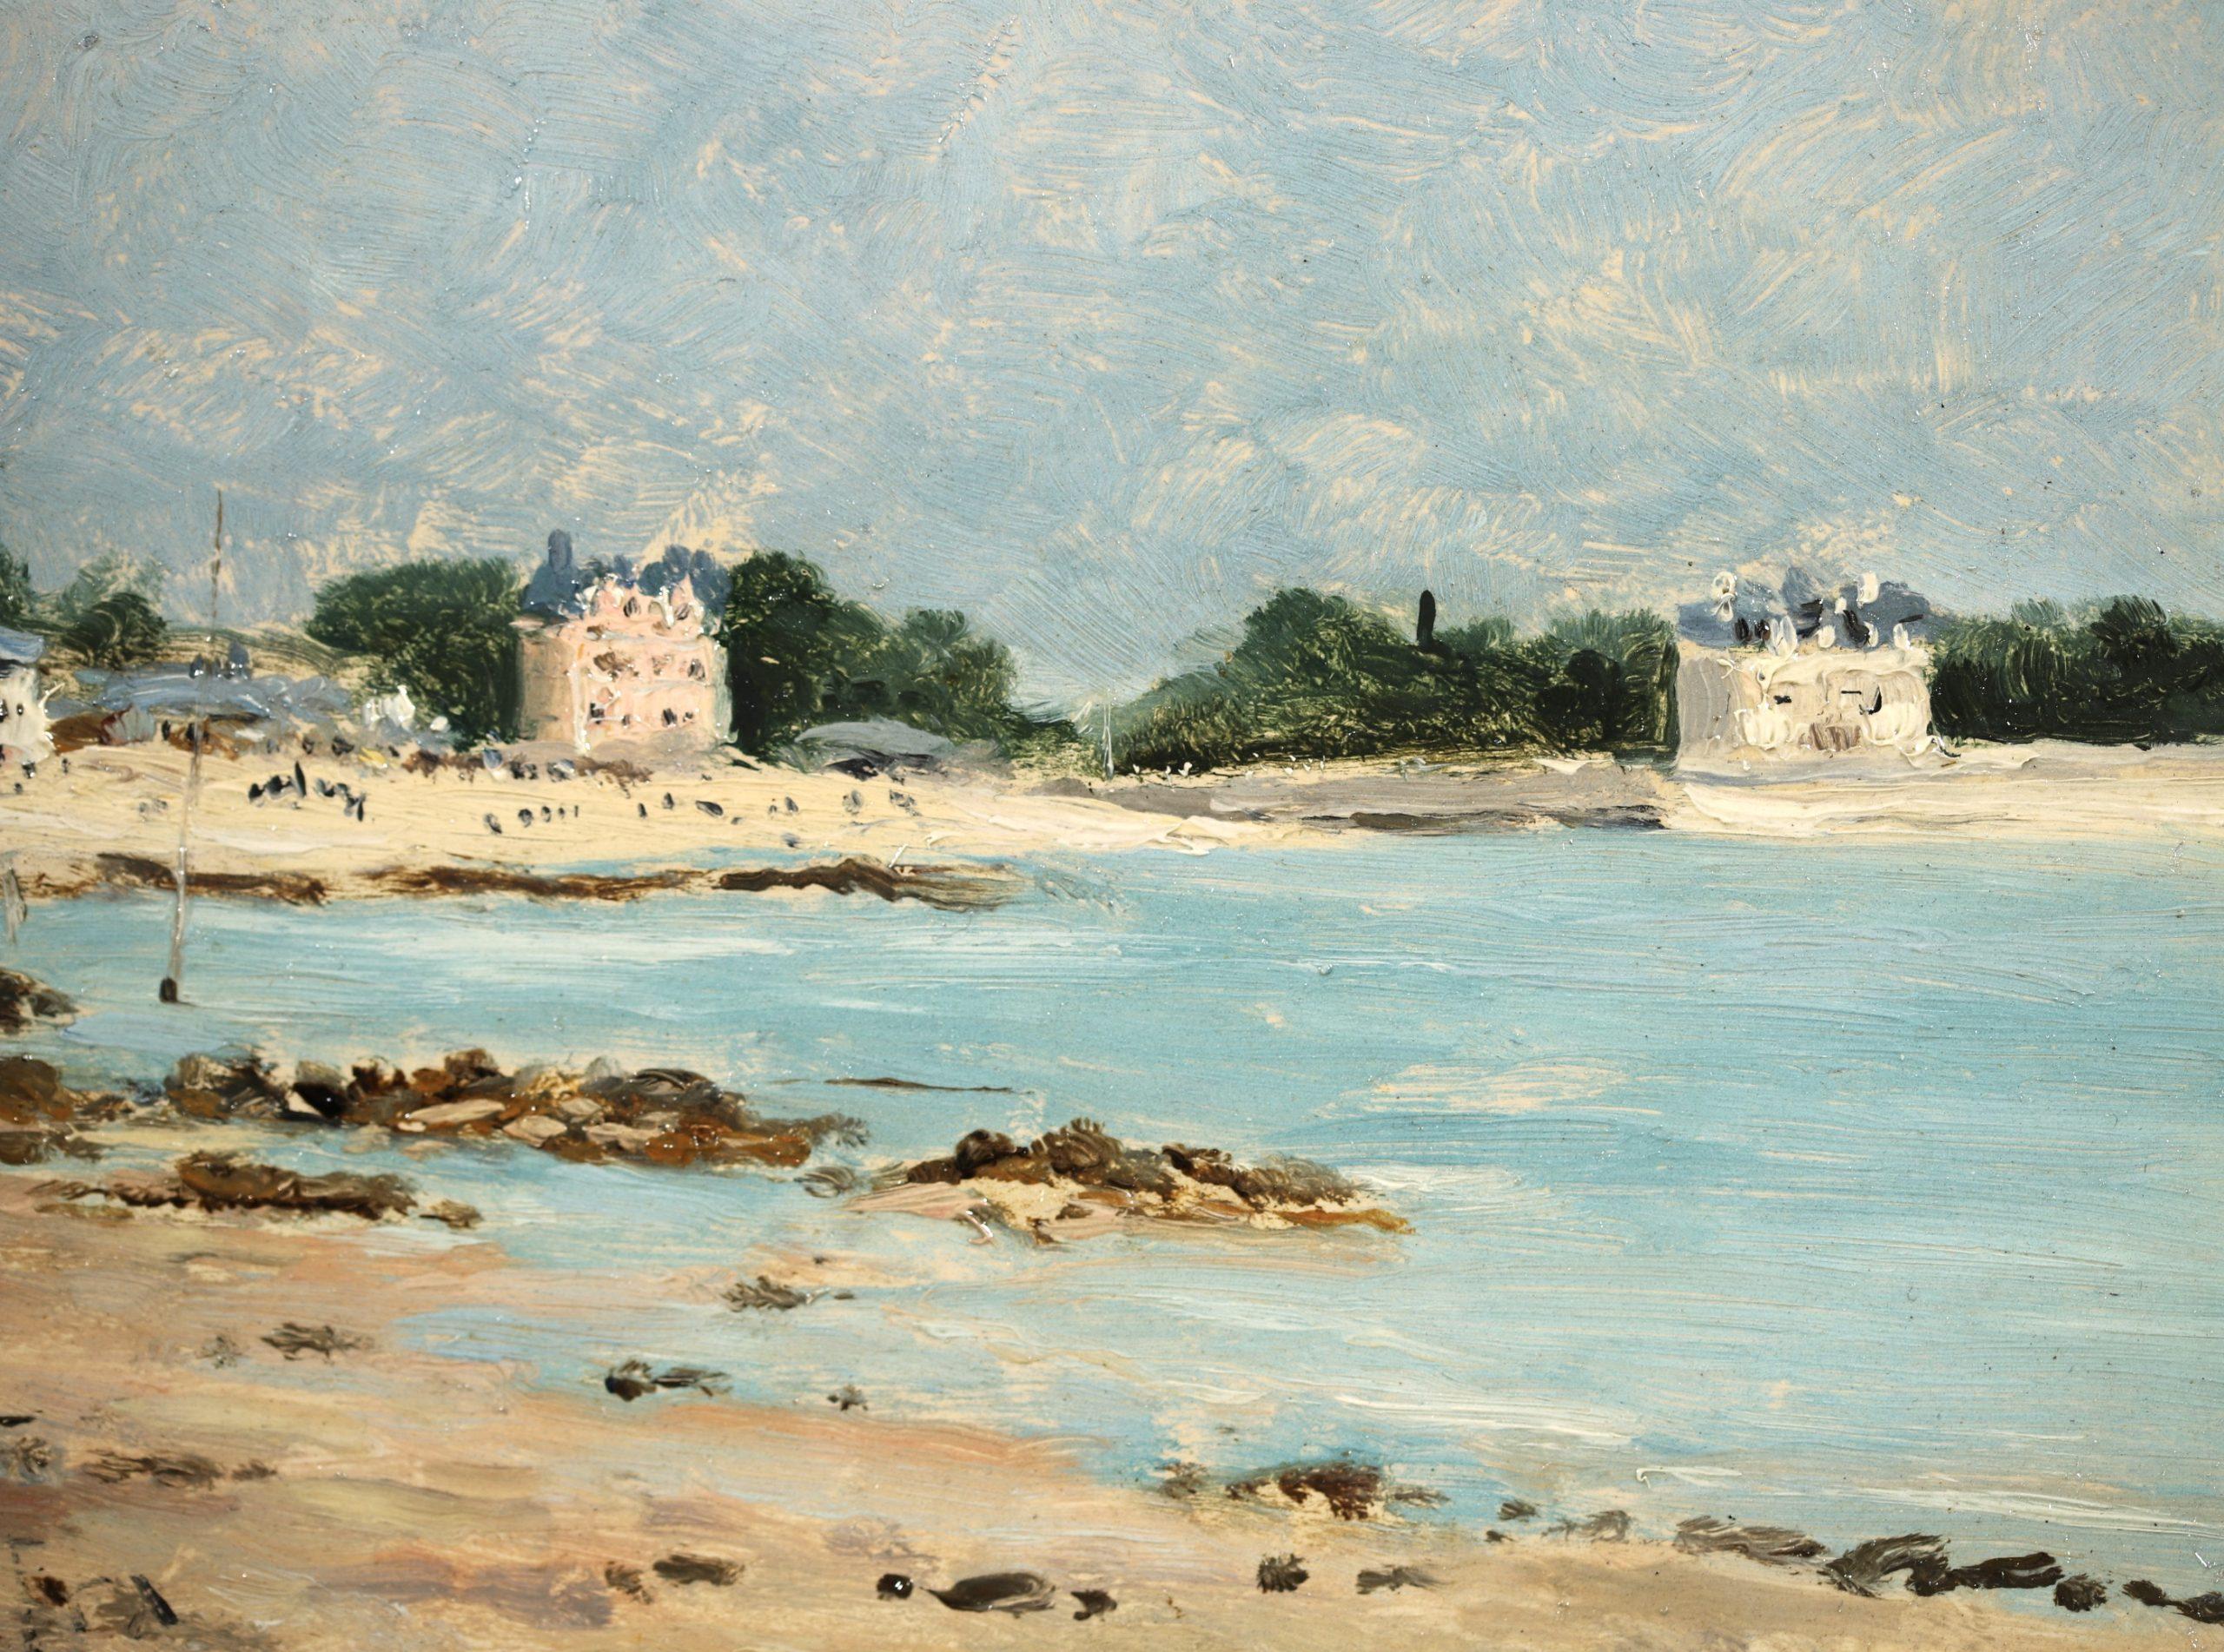 Le plage de Morgat - Impressionist Seascape Landscape Oil by Maxime Maufra For Sale 4